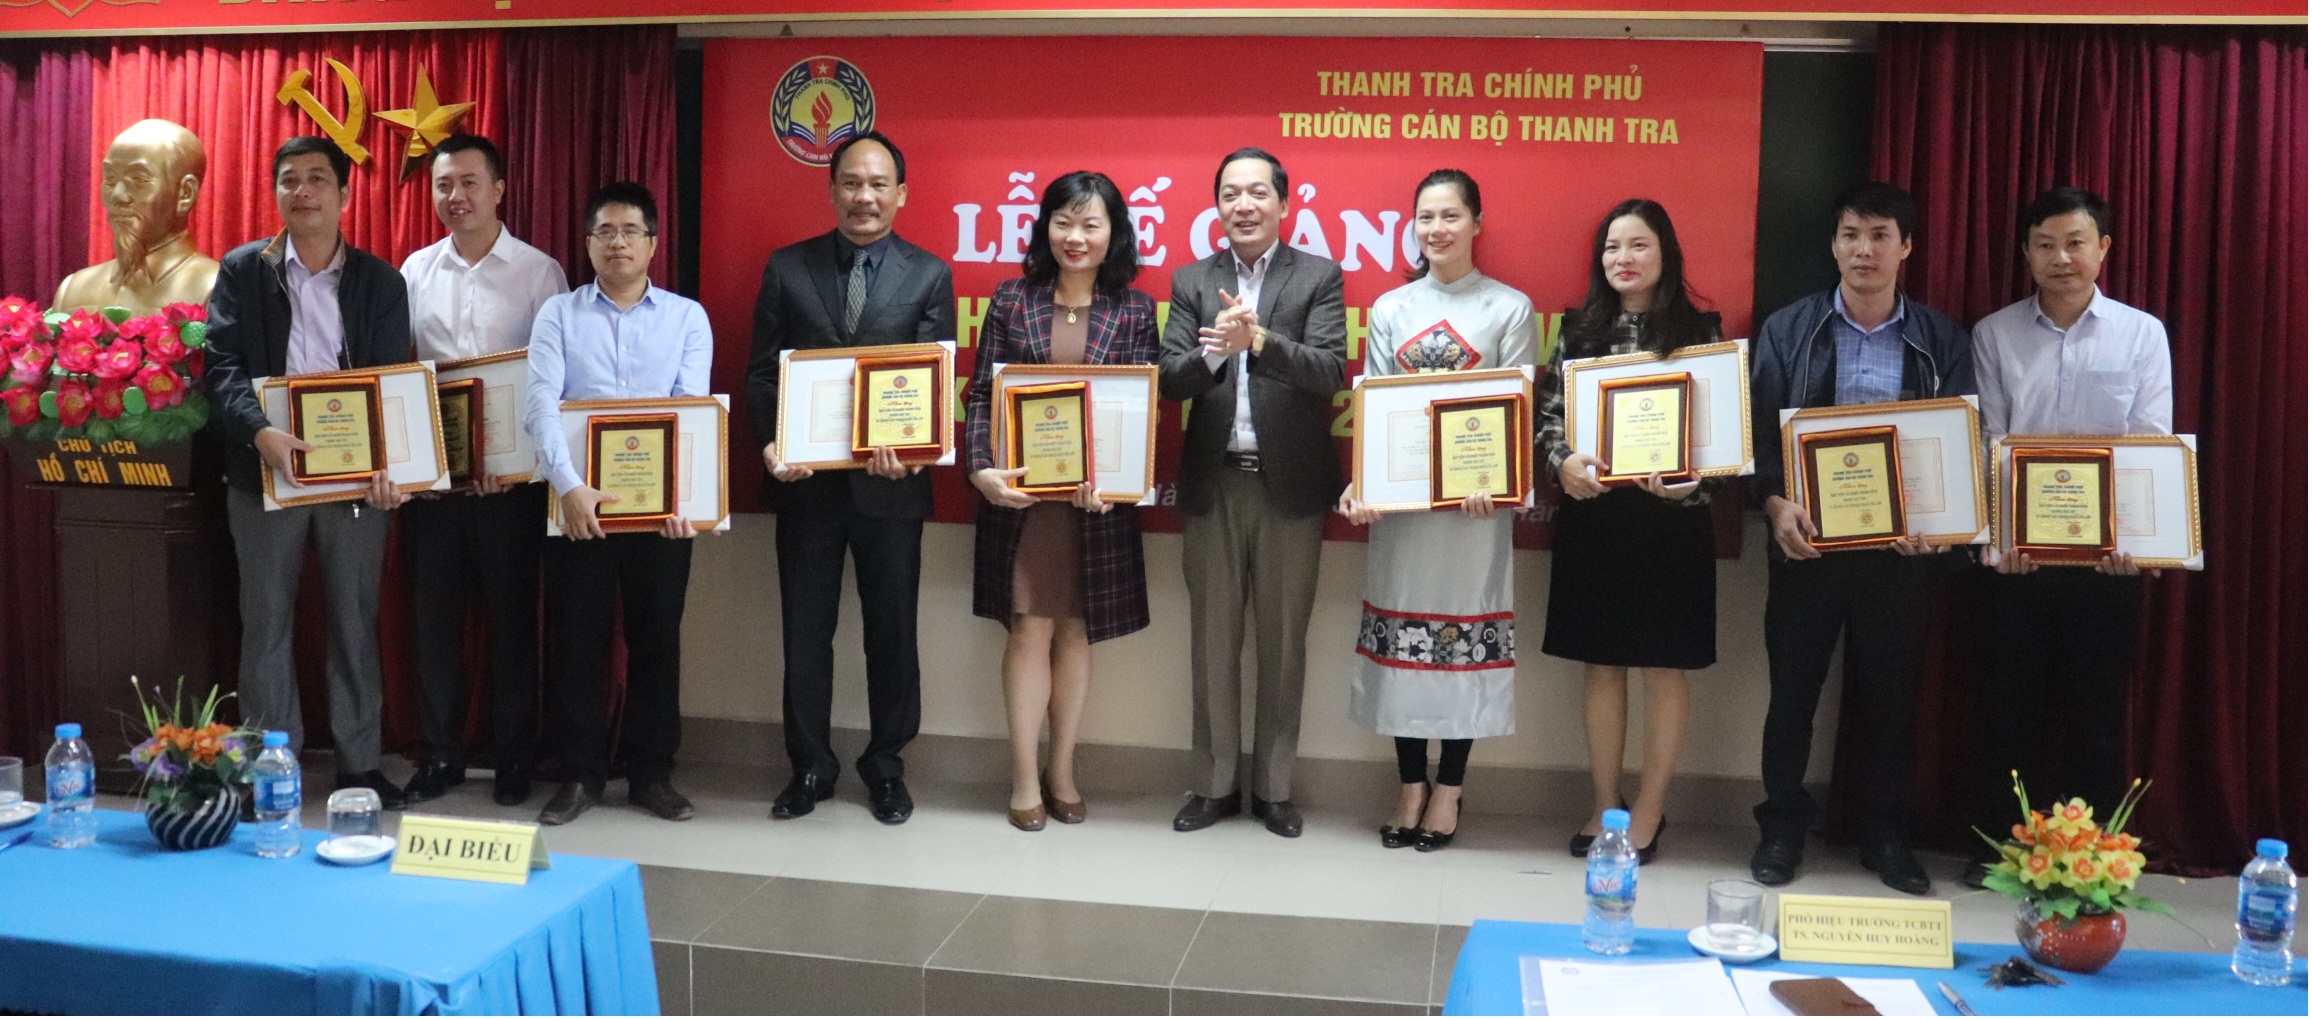 TS Nguyễn Huy Hoàng PHT nhà trường trao GK cho HV